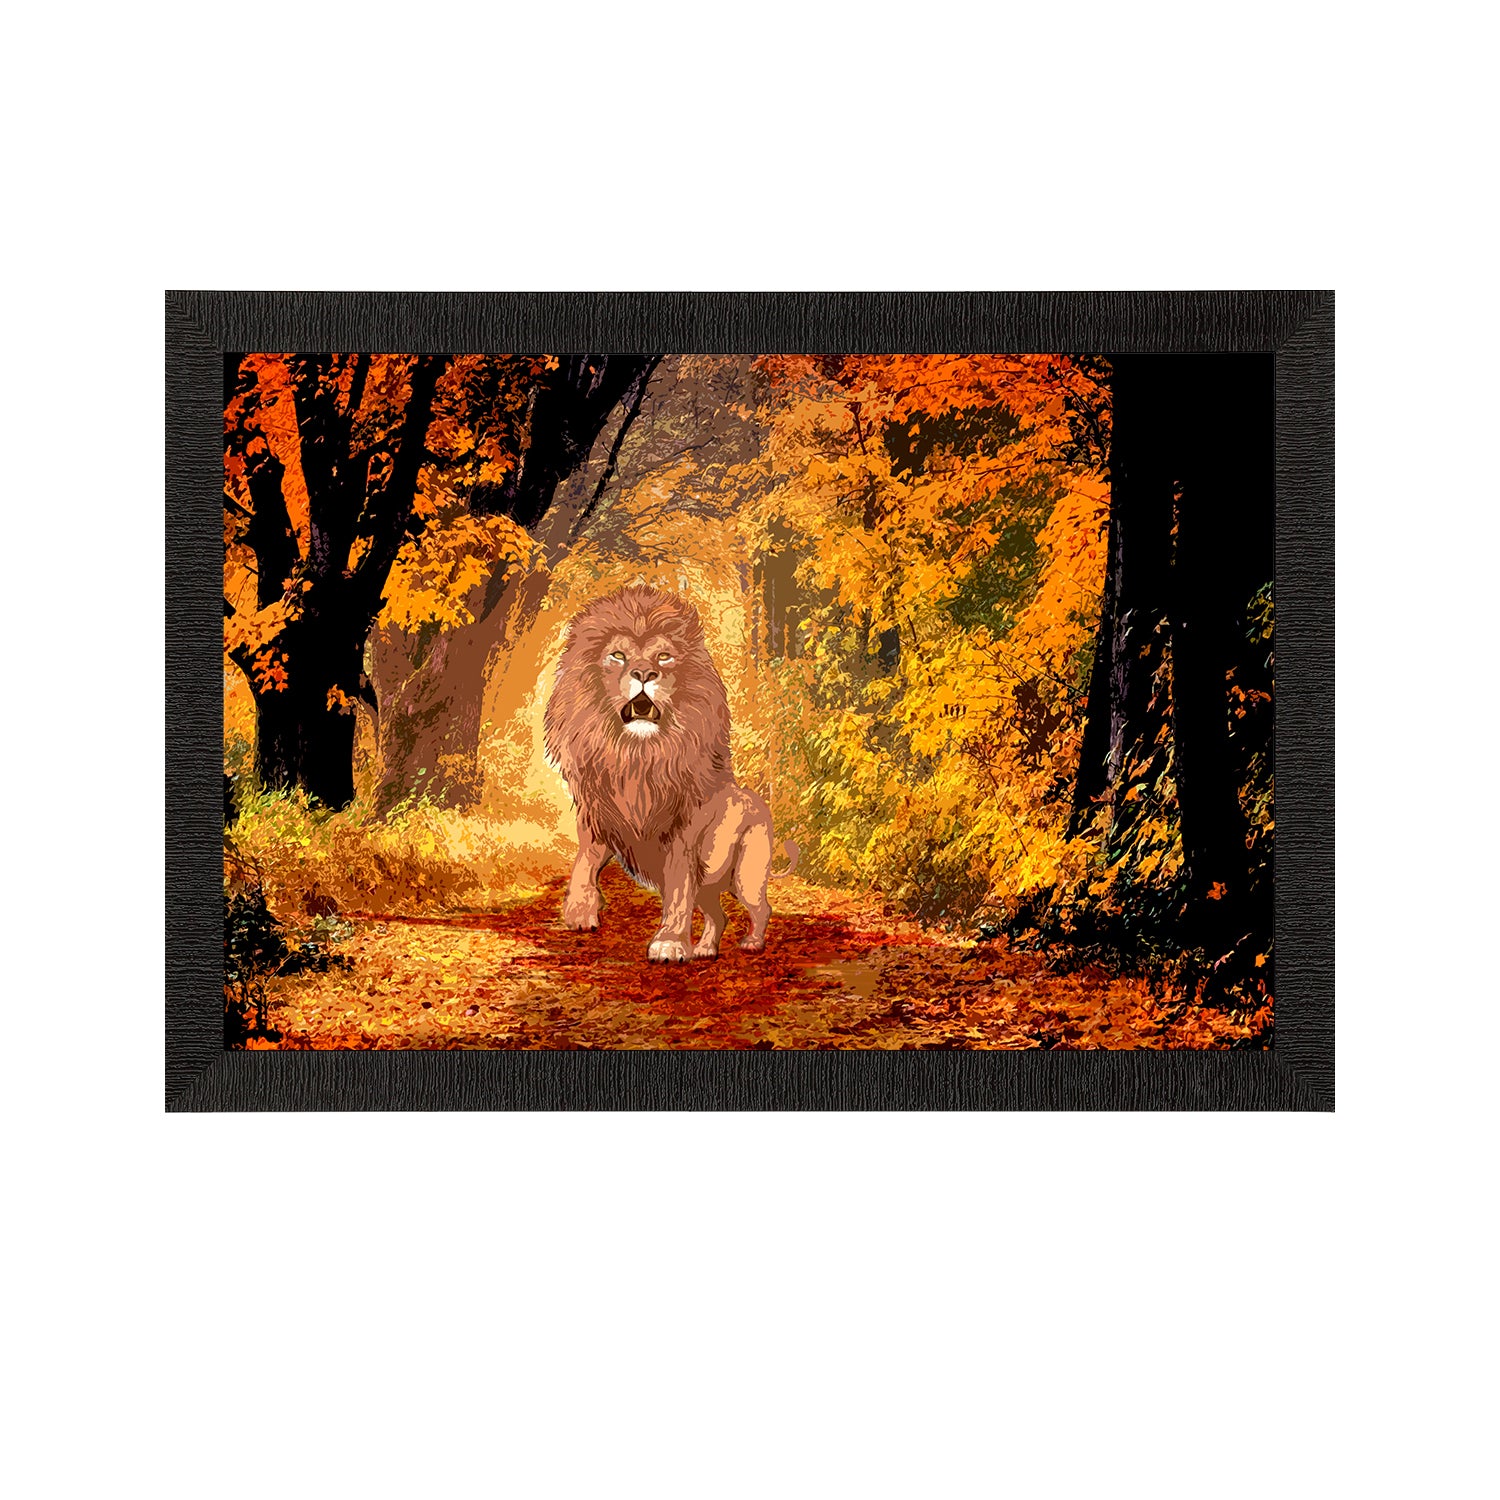 Roaring Lion in Autumn Season Satin Matt Texture UV Art Painting